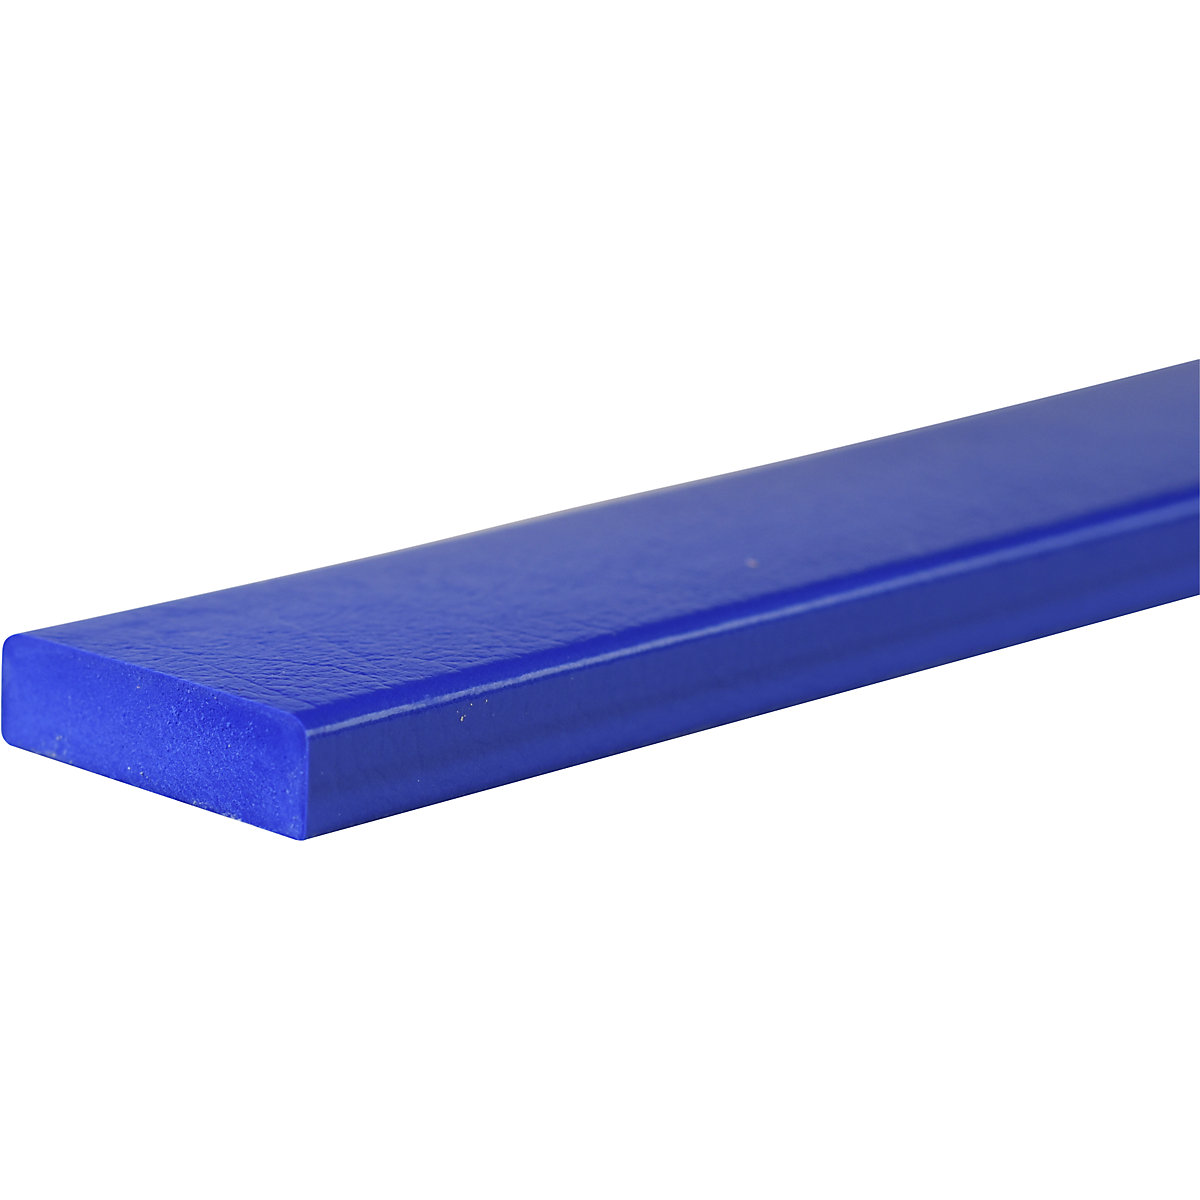 Proteção de superfícies Knuffi® – SHG, tipo S, unidade de 1 m, azul-30